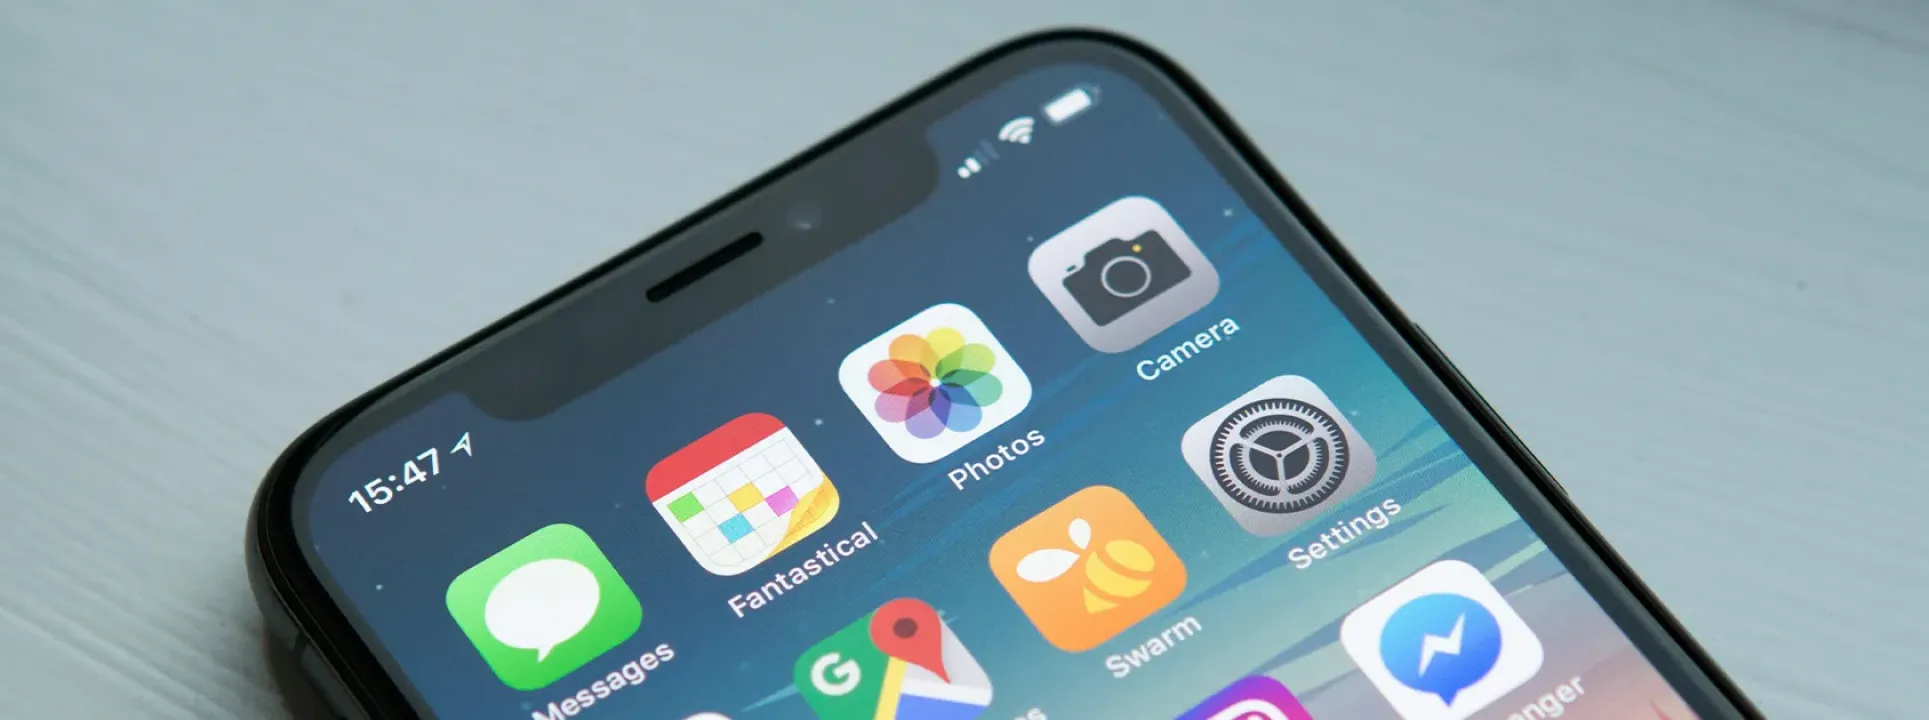 Apple lance iOS 18: découvrez les nouveautés!  blog post